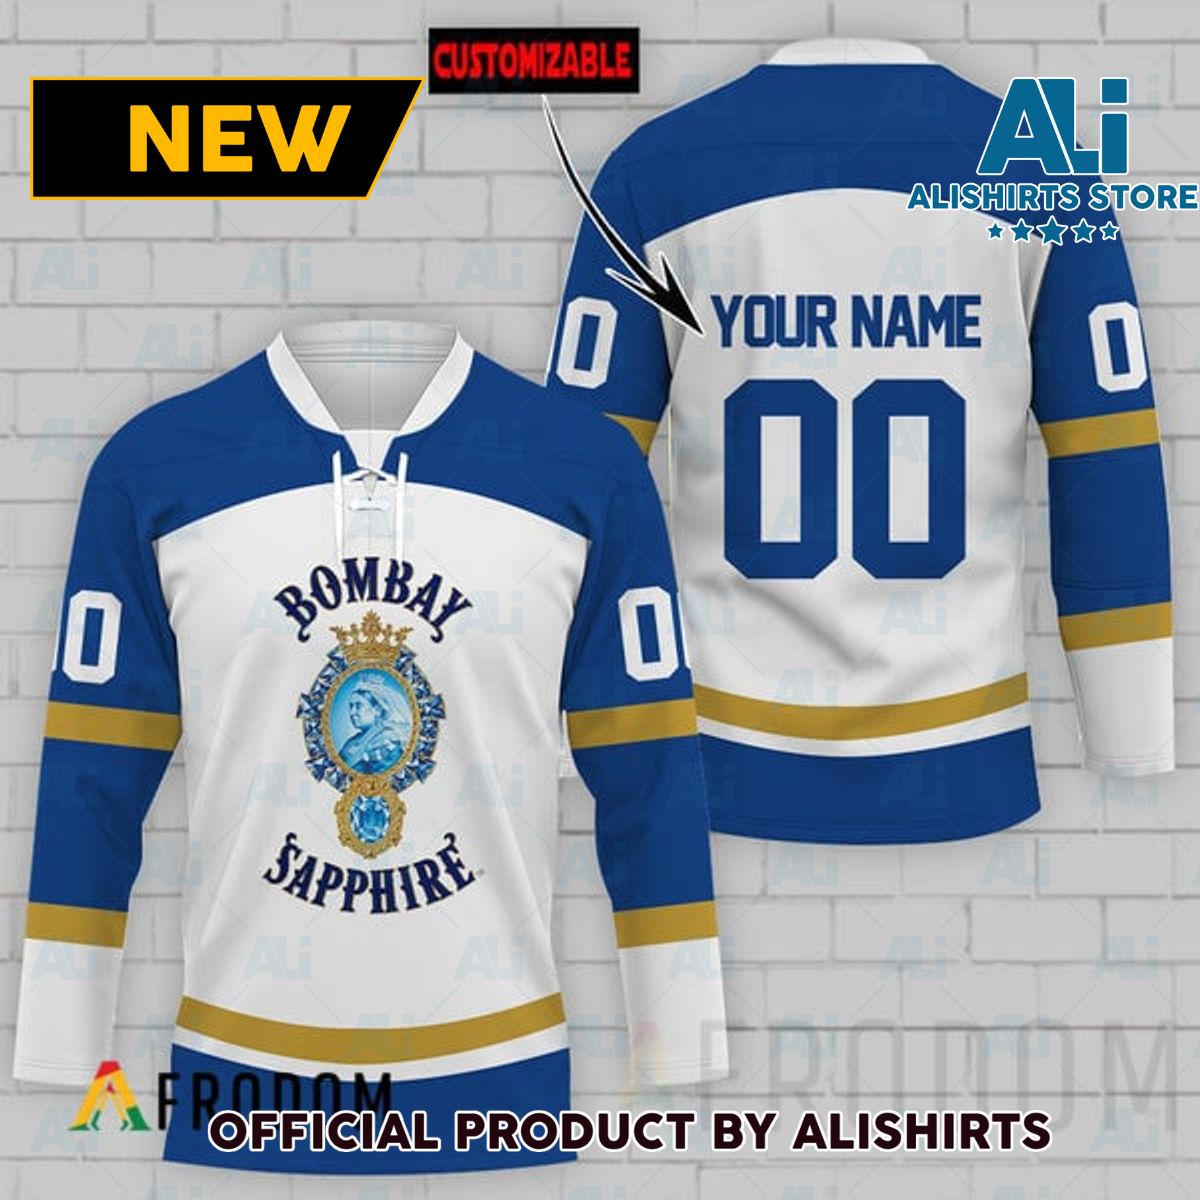 Personalized Bombay Sapphire Hockey Jersey